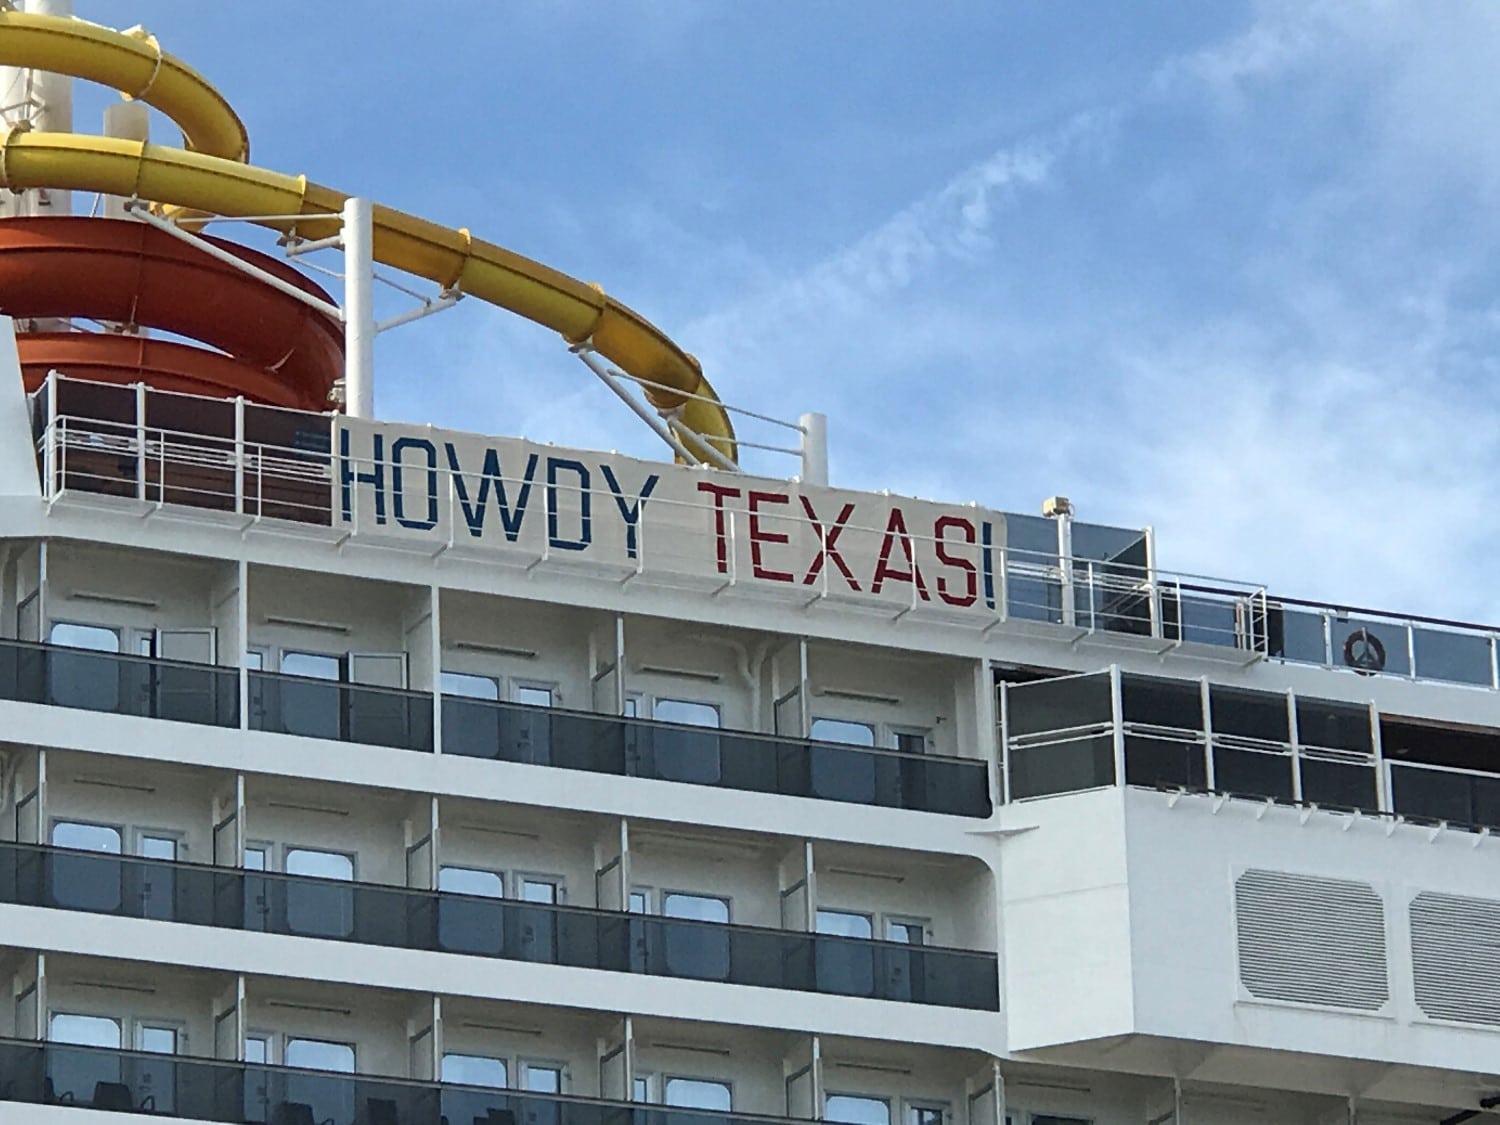 Howdy Texas, Carnival ship